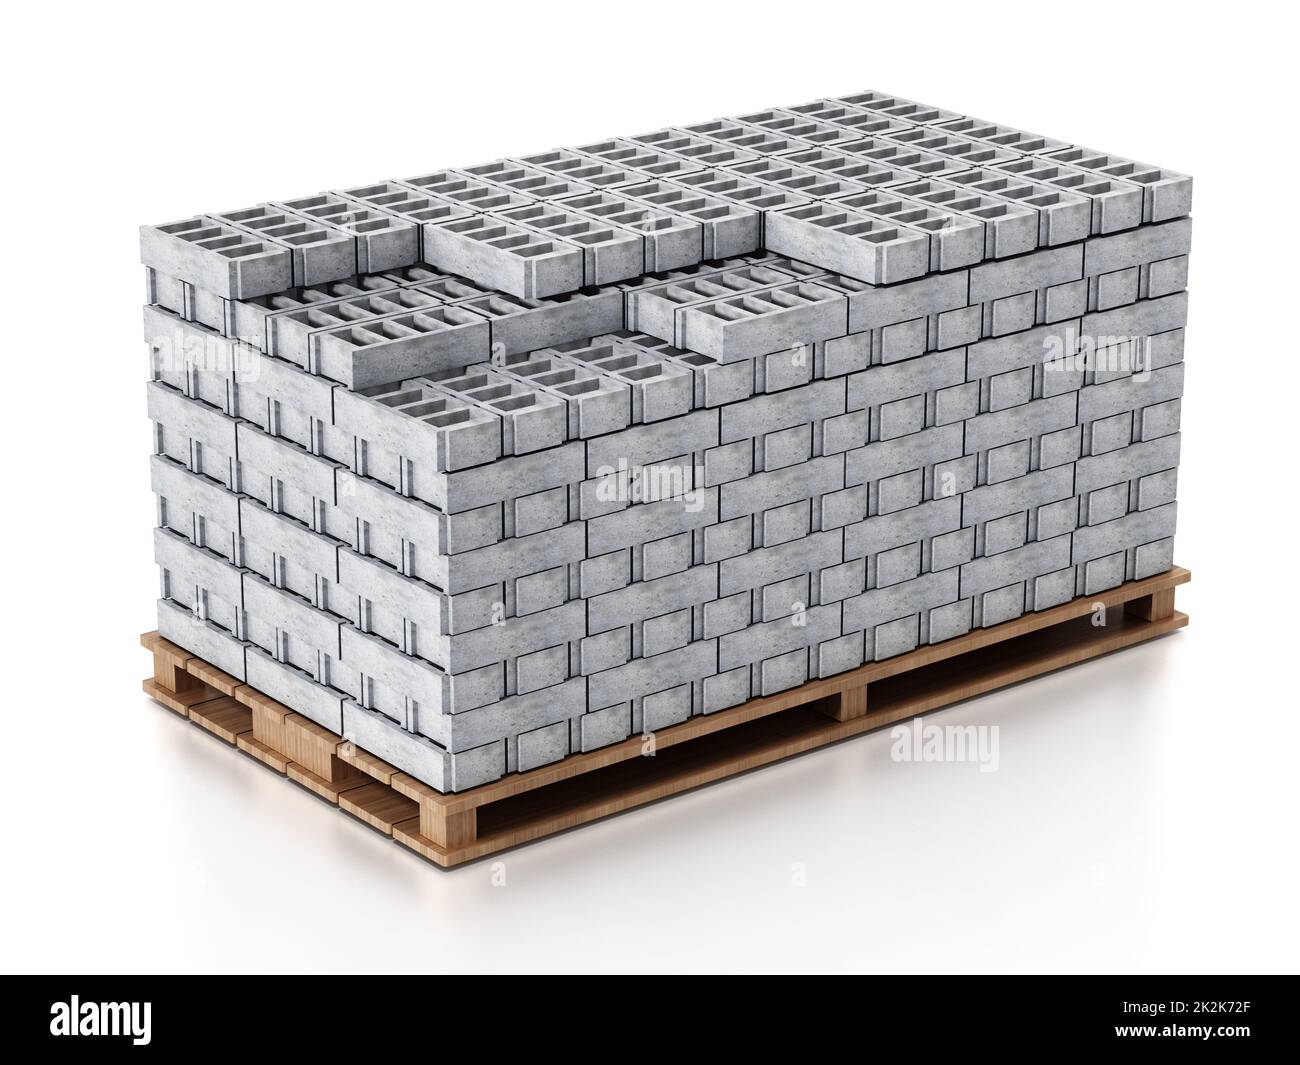 Pile de briques de construction grises sur une base en bois. 3D illustration Banque D'Images